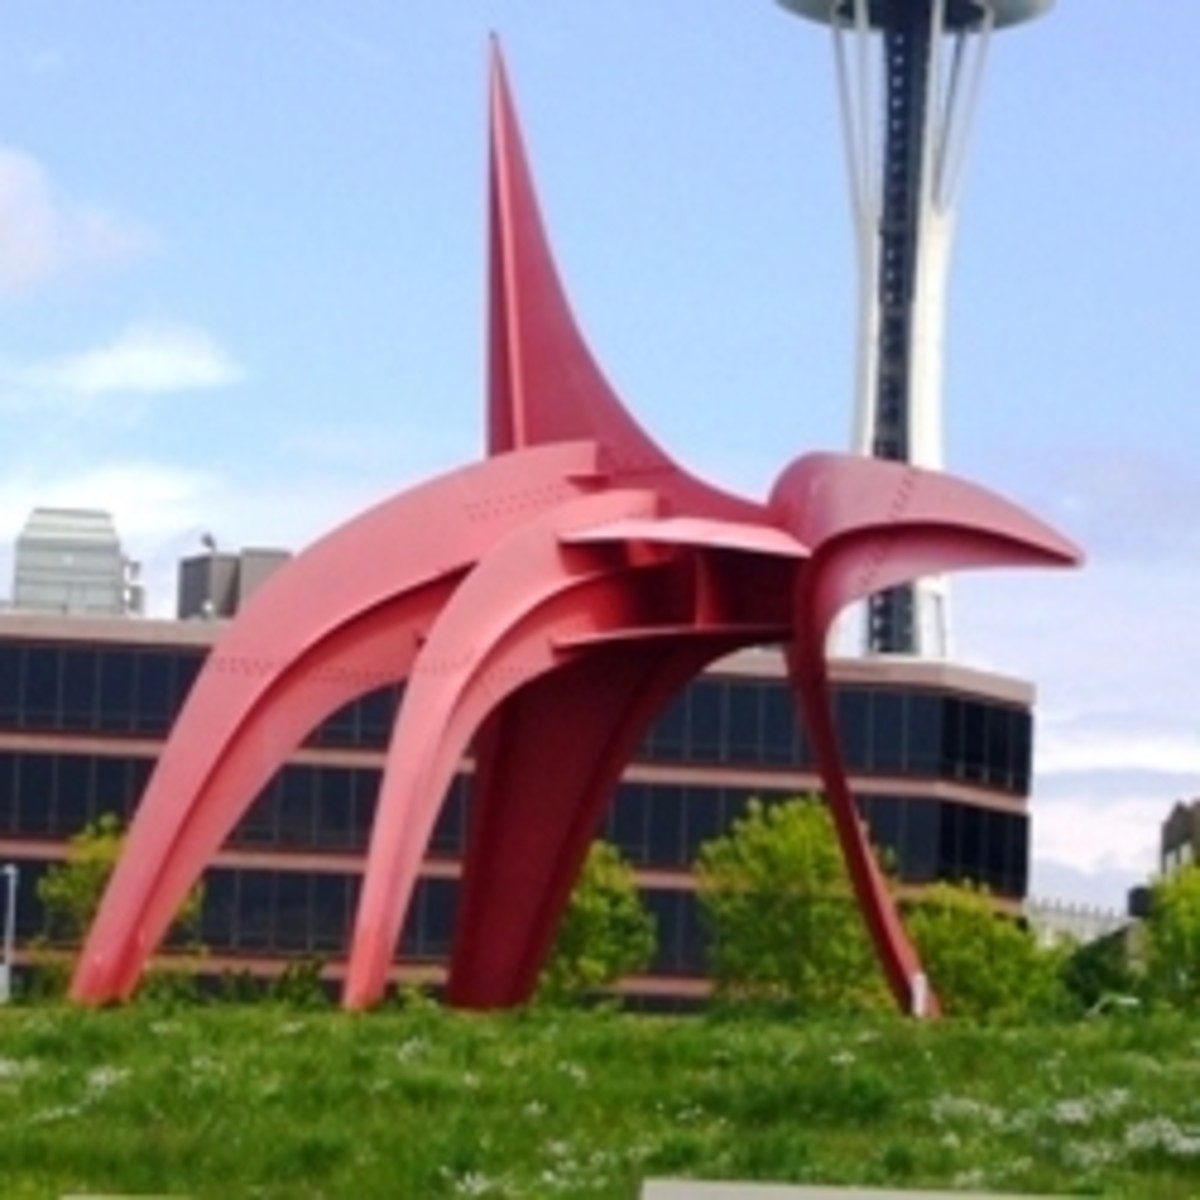 The Seattle Art Museum Sculpture Park